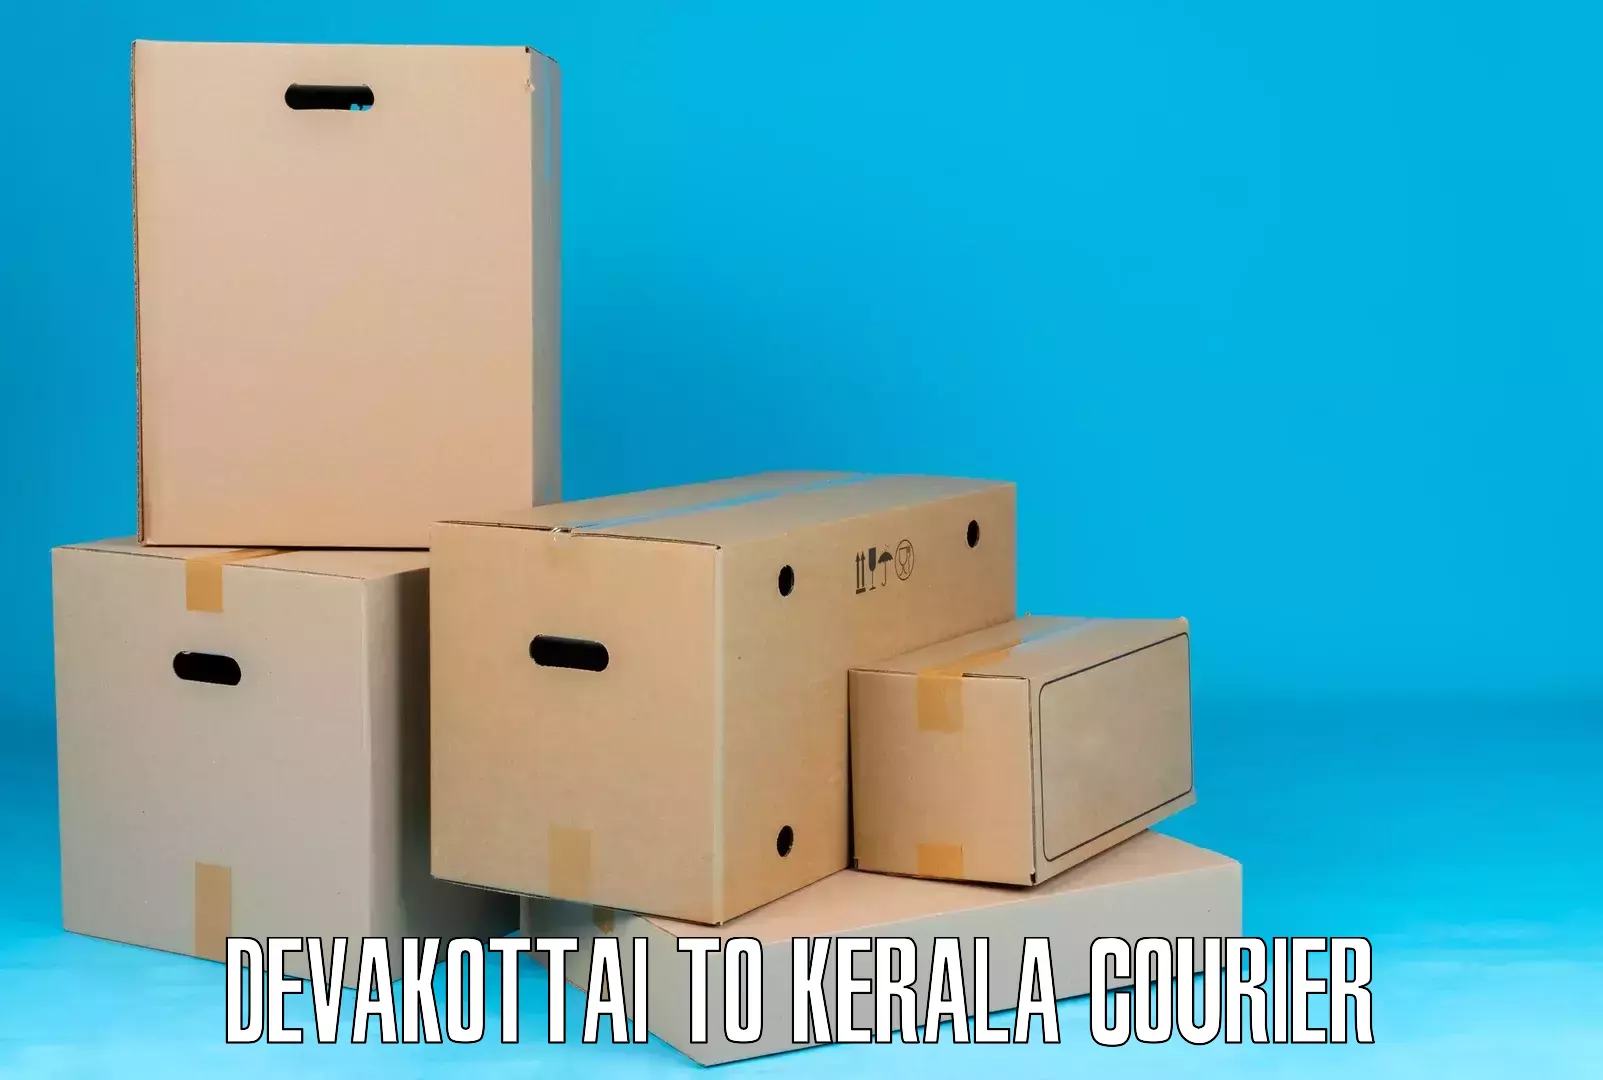 24/7 courier service Devakottai to Kottayam